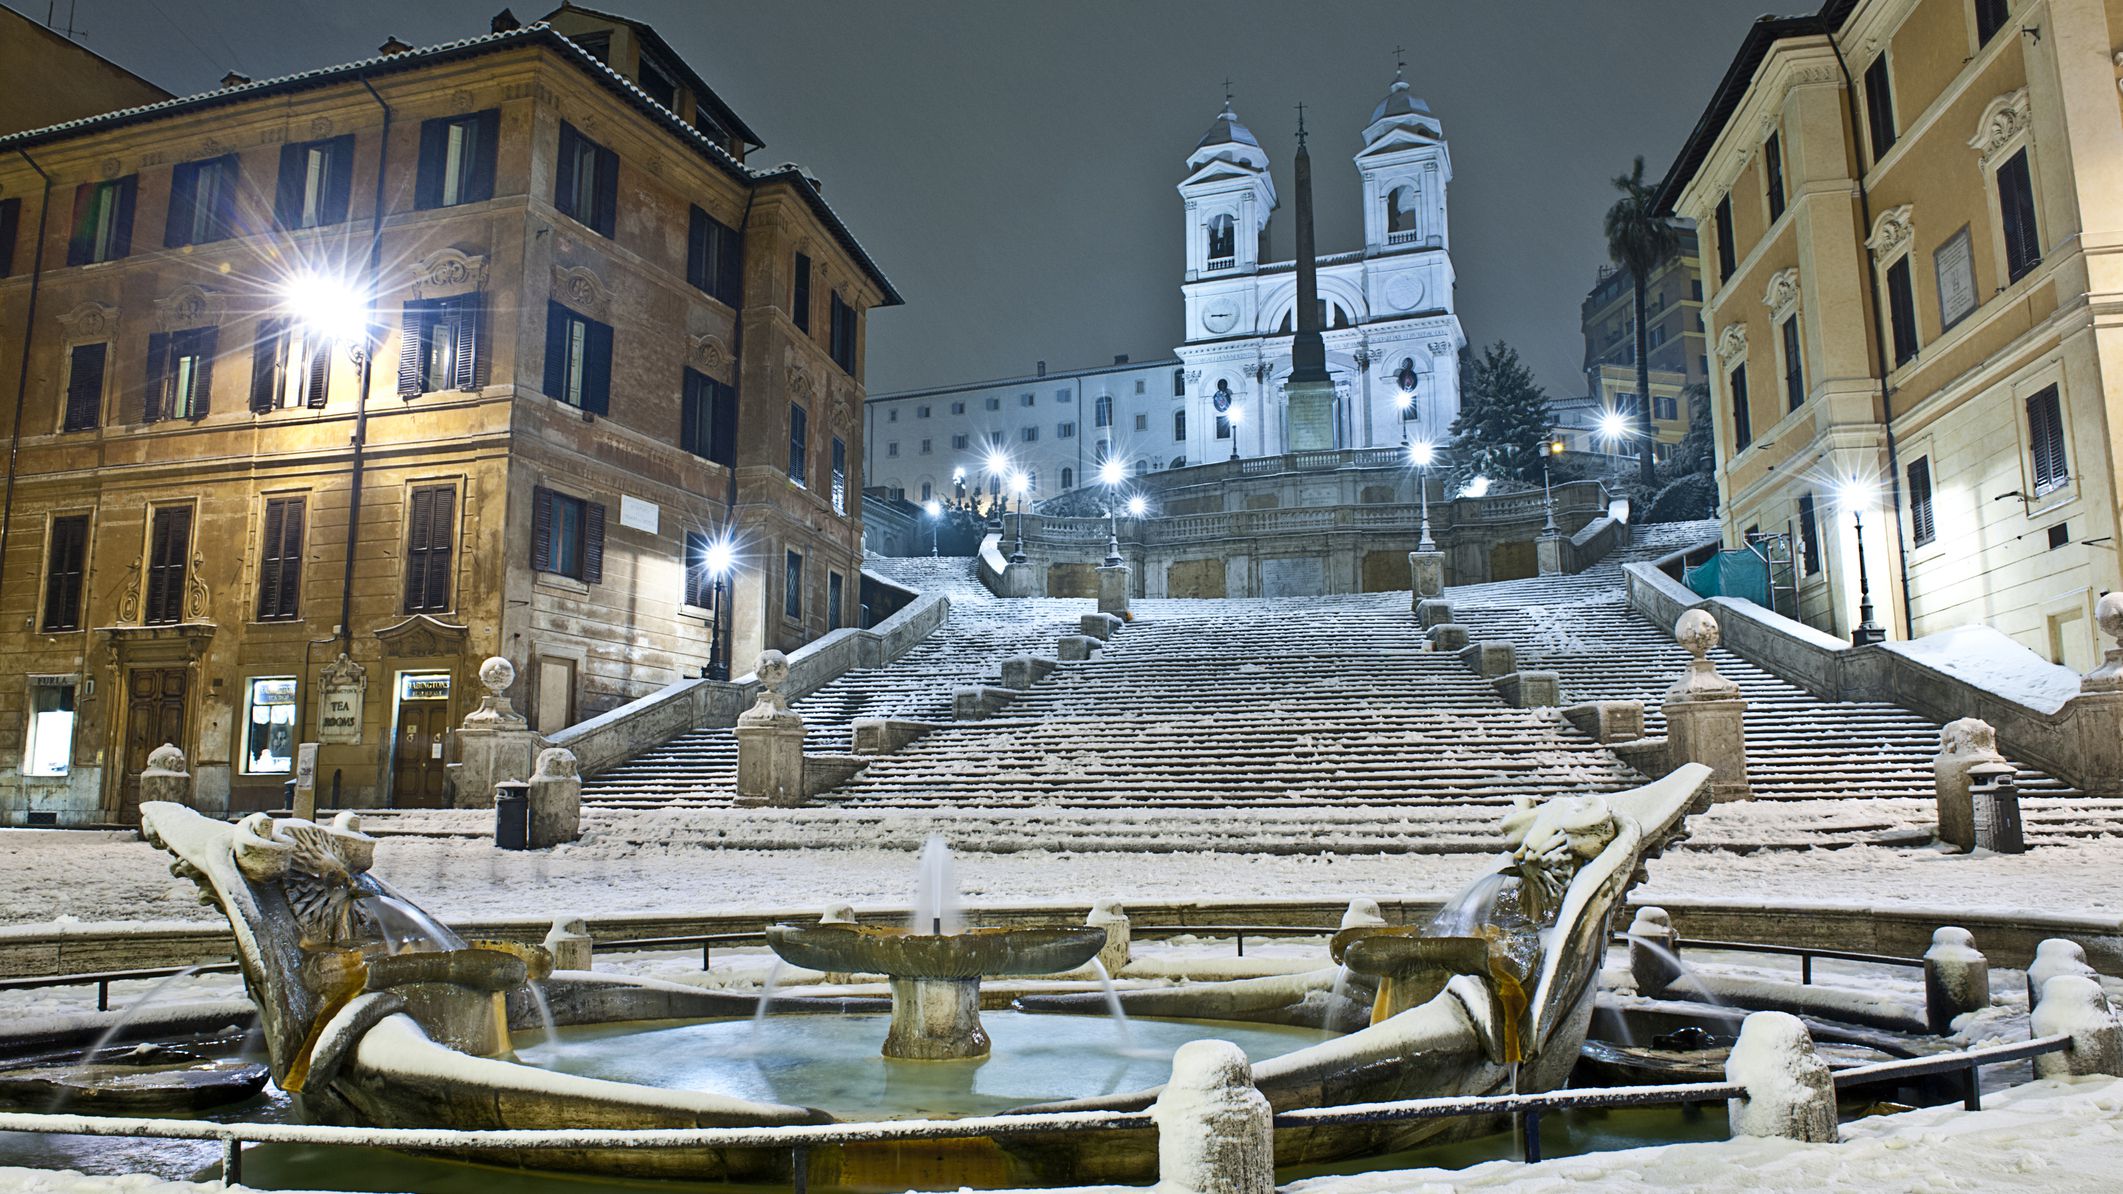 İtalya'daki kış turizmi bölgeleri salgından kurtulamama tehlikesiyle karşı karşıya